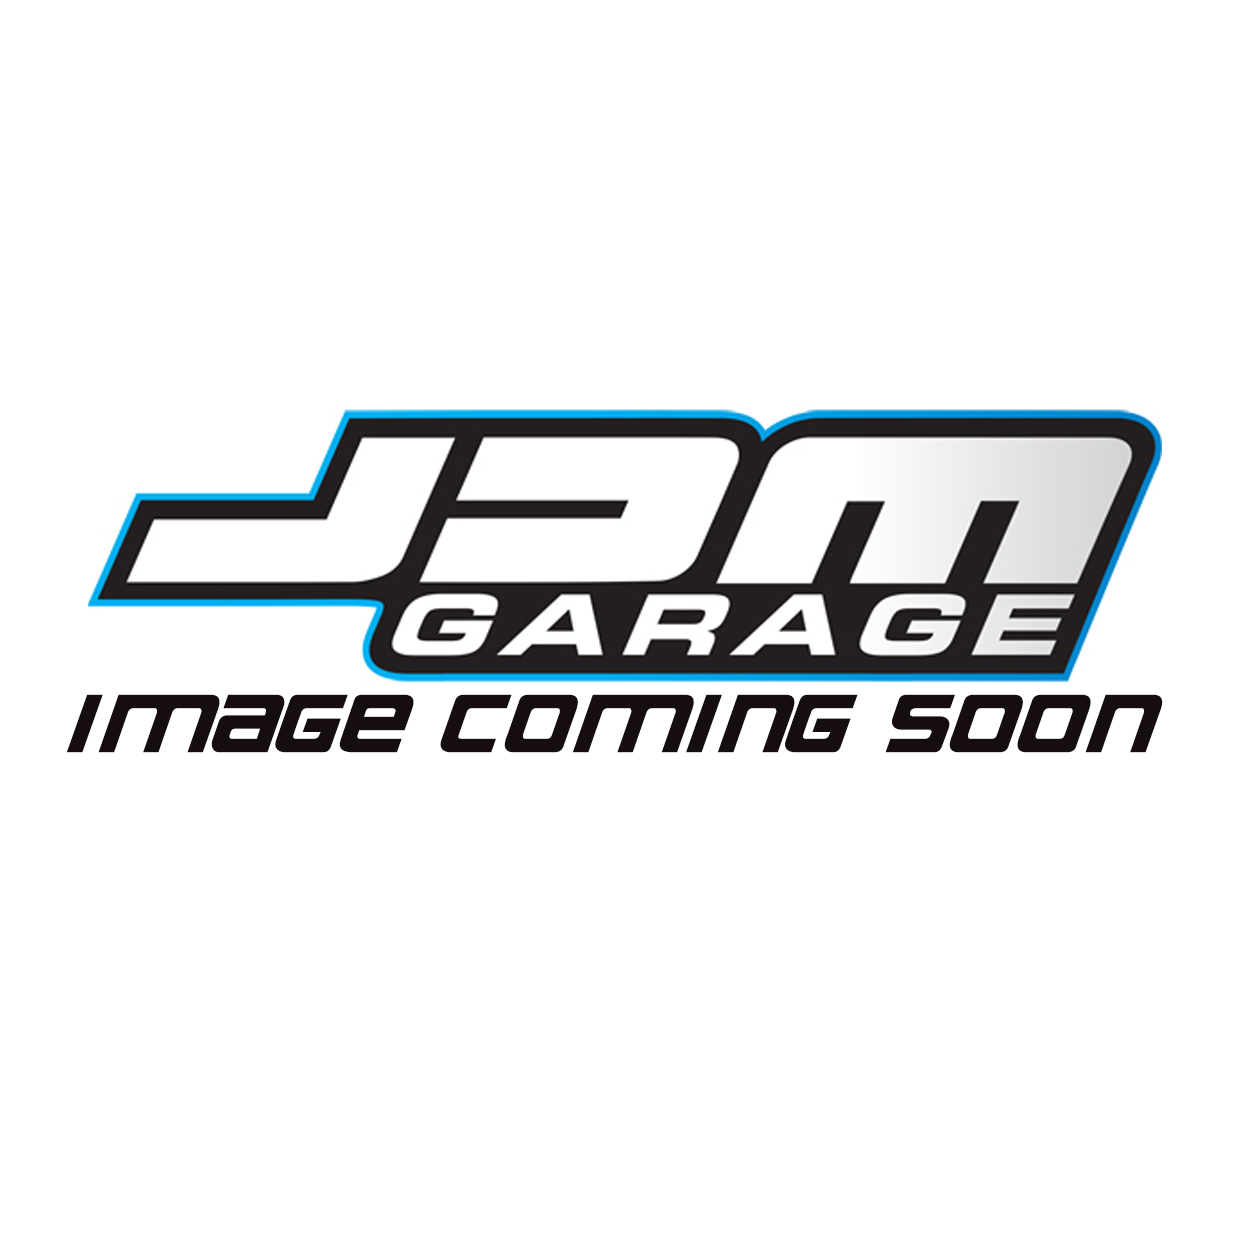 Genuine Mitsubishi Rocker Cover Gasket Fits Evo 4 IV 5 V 6 VI 7 VII 8 VIII 4G63T MD340535